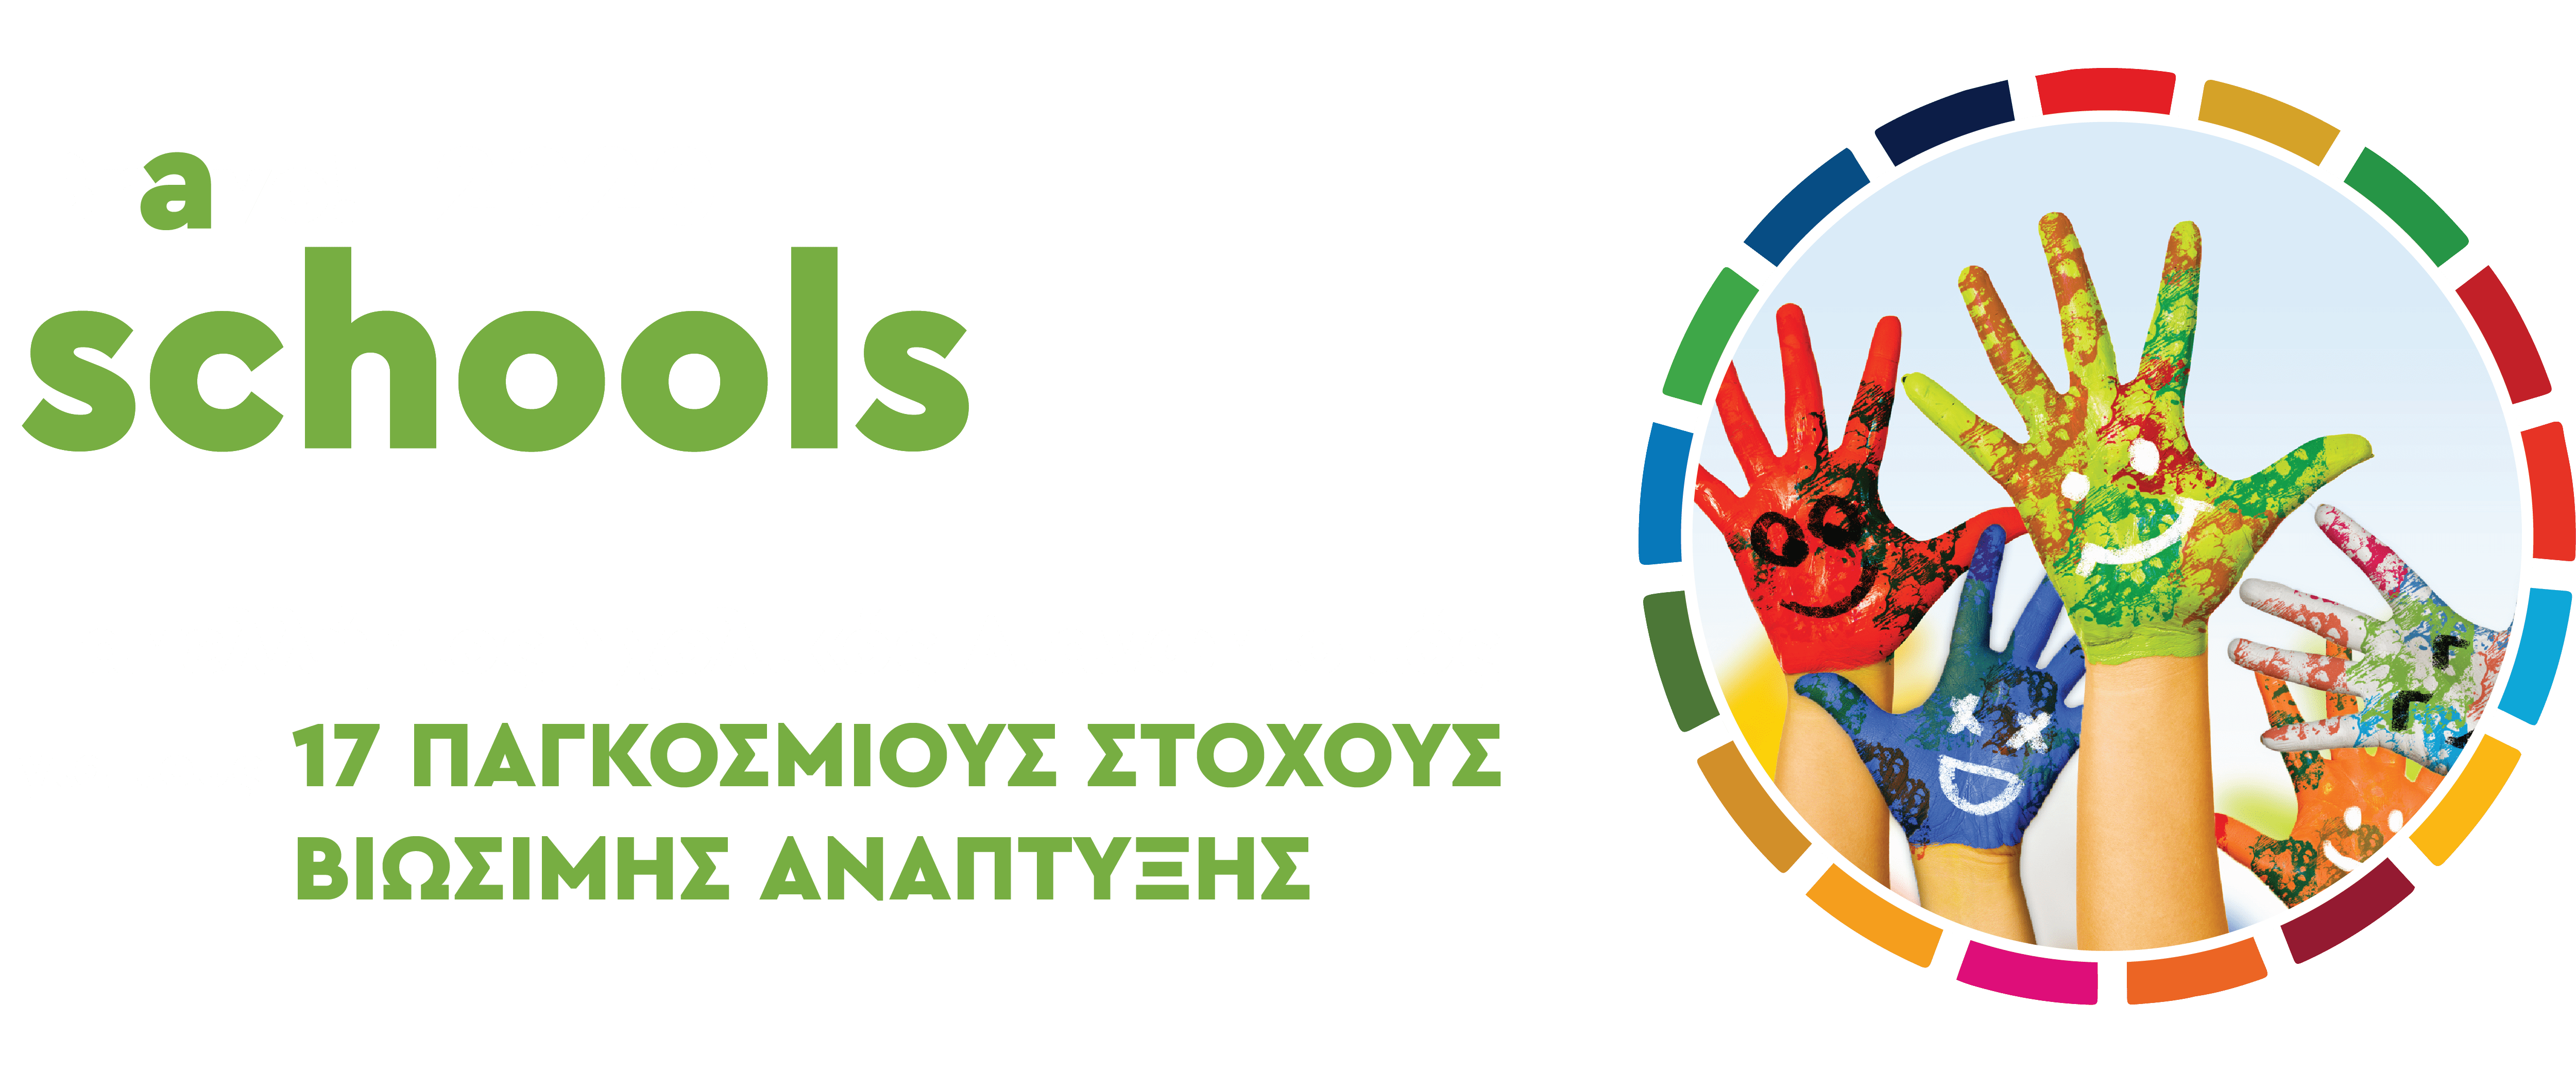 Πανελληνιος Σχολικός Διαγωνισμός για τους 17 Παγκόσμιους Στόχους Βιώσιμης Ανάπτυξης - Bravo schools